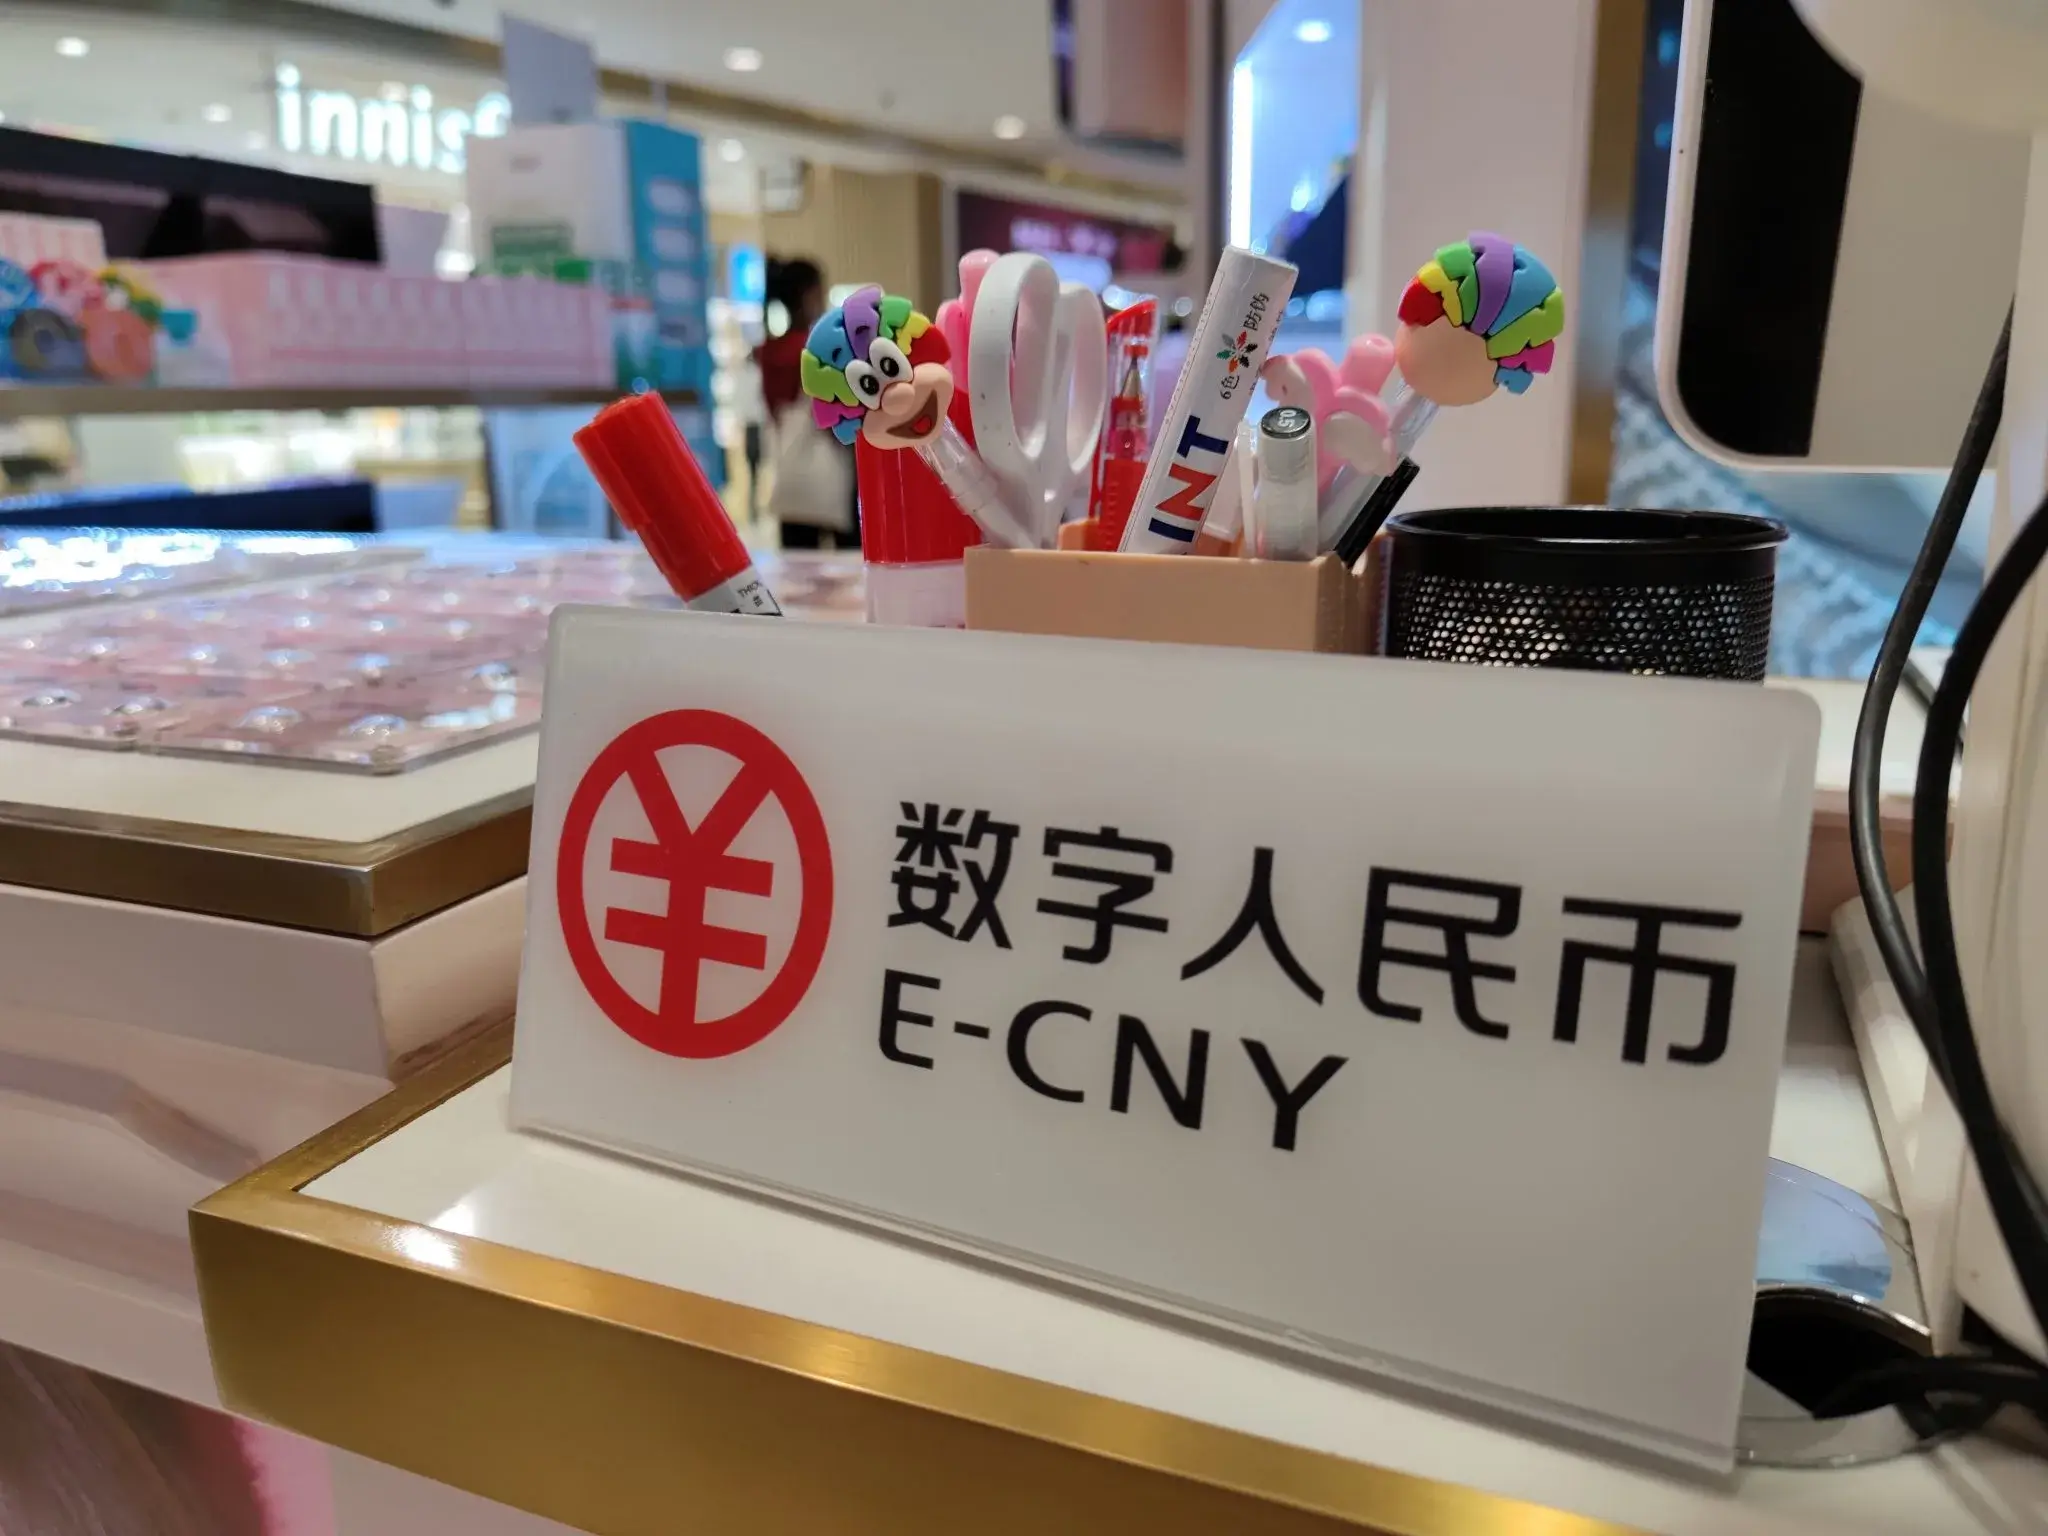 Trung Quốc mở to thí điểm e-CNY để trả lương công chức và các đơn vị thuộc sở hữu nhà nước